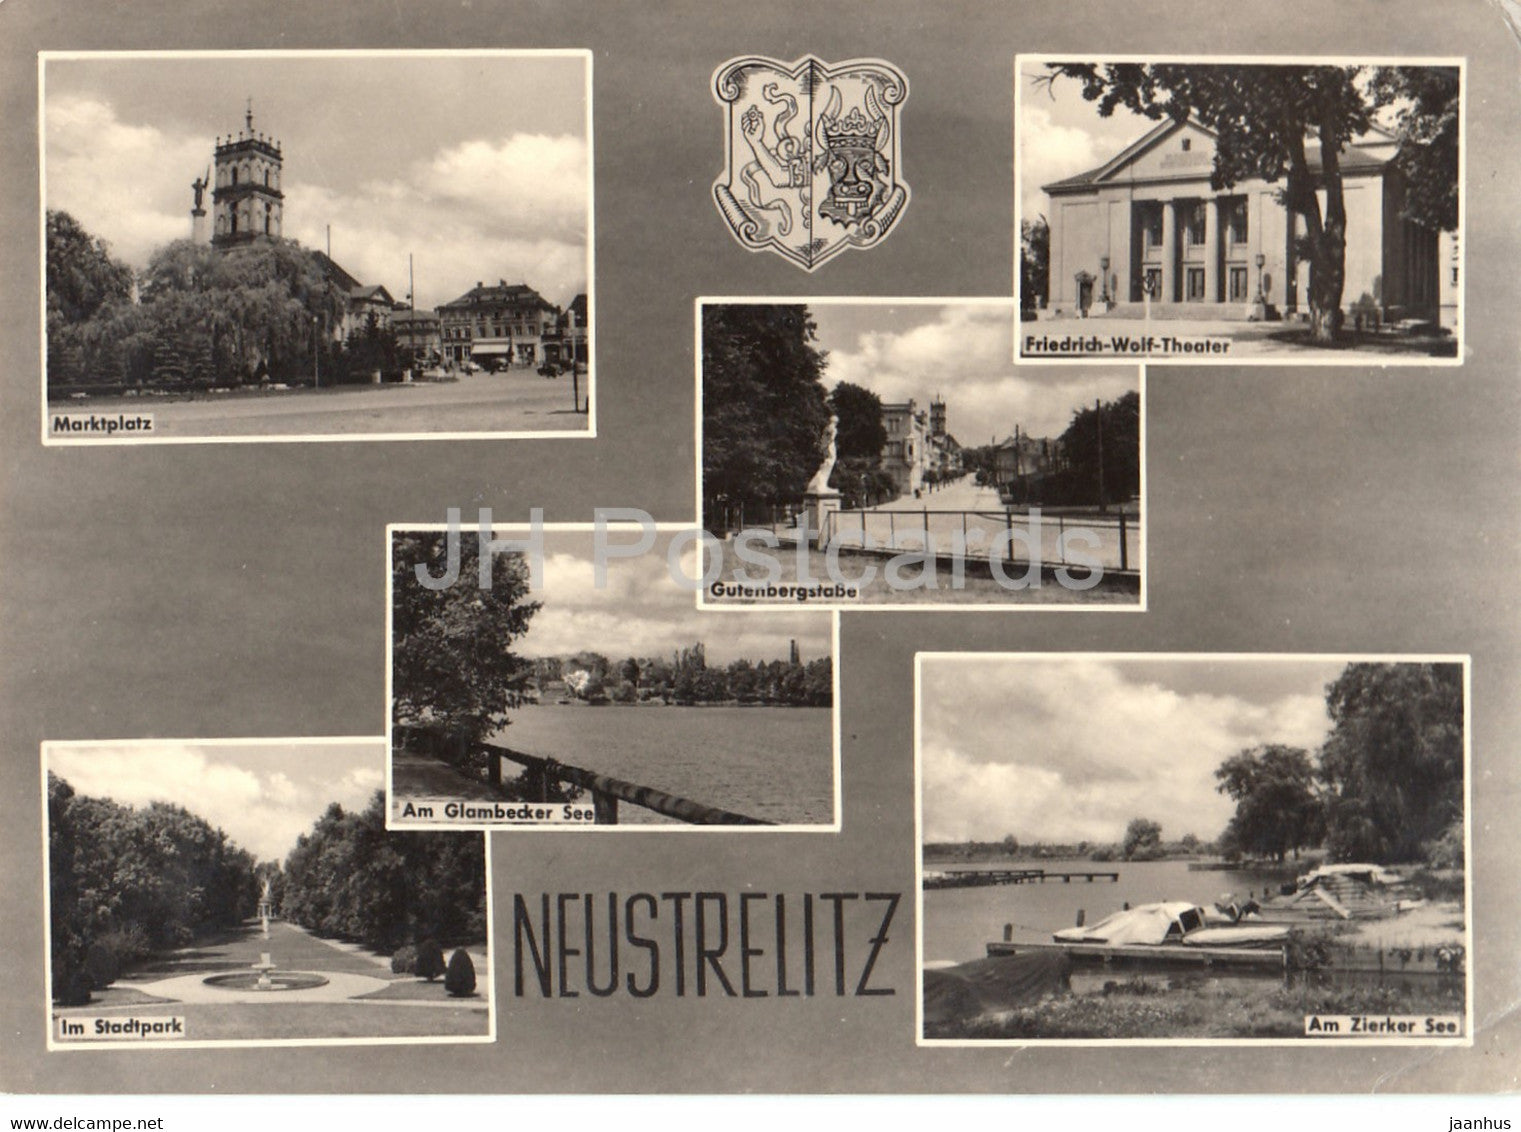 Neustrelitz - Marktplatz - Im Stadpark - Am Zierker See - Friedrich Wolf Theater - theatre - Germany DDR - used - JH Postcards